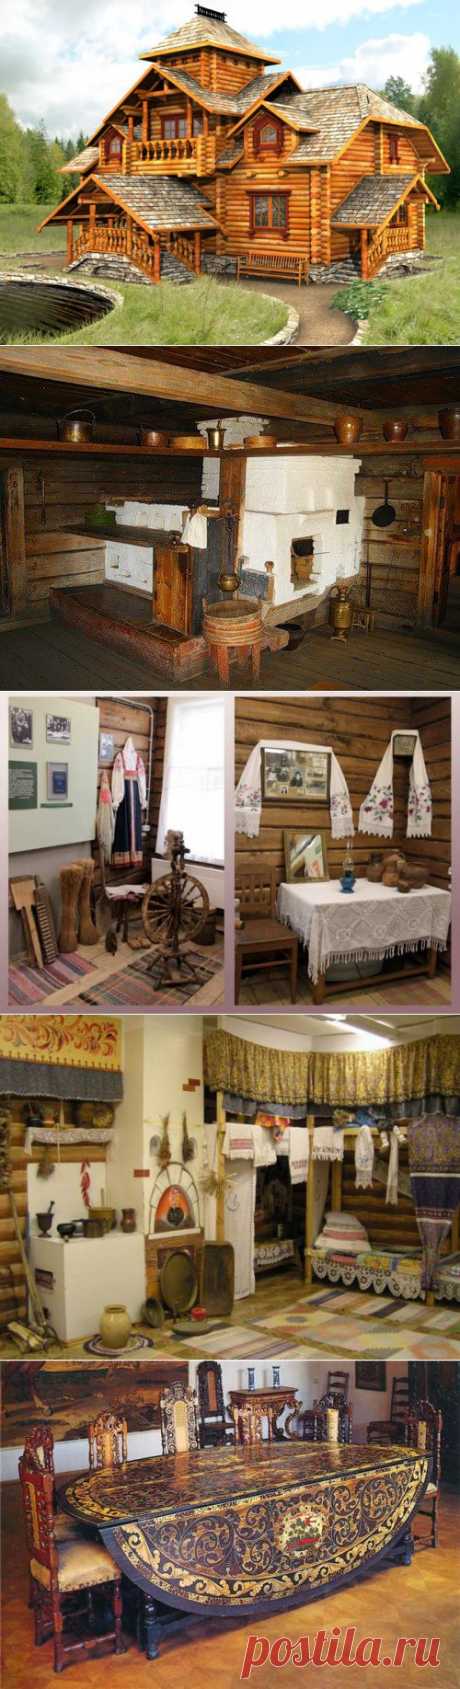 Как славяне относились к дому | Искусство